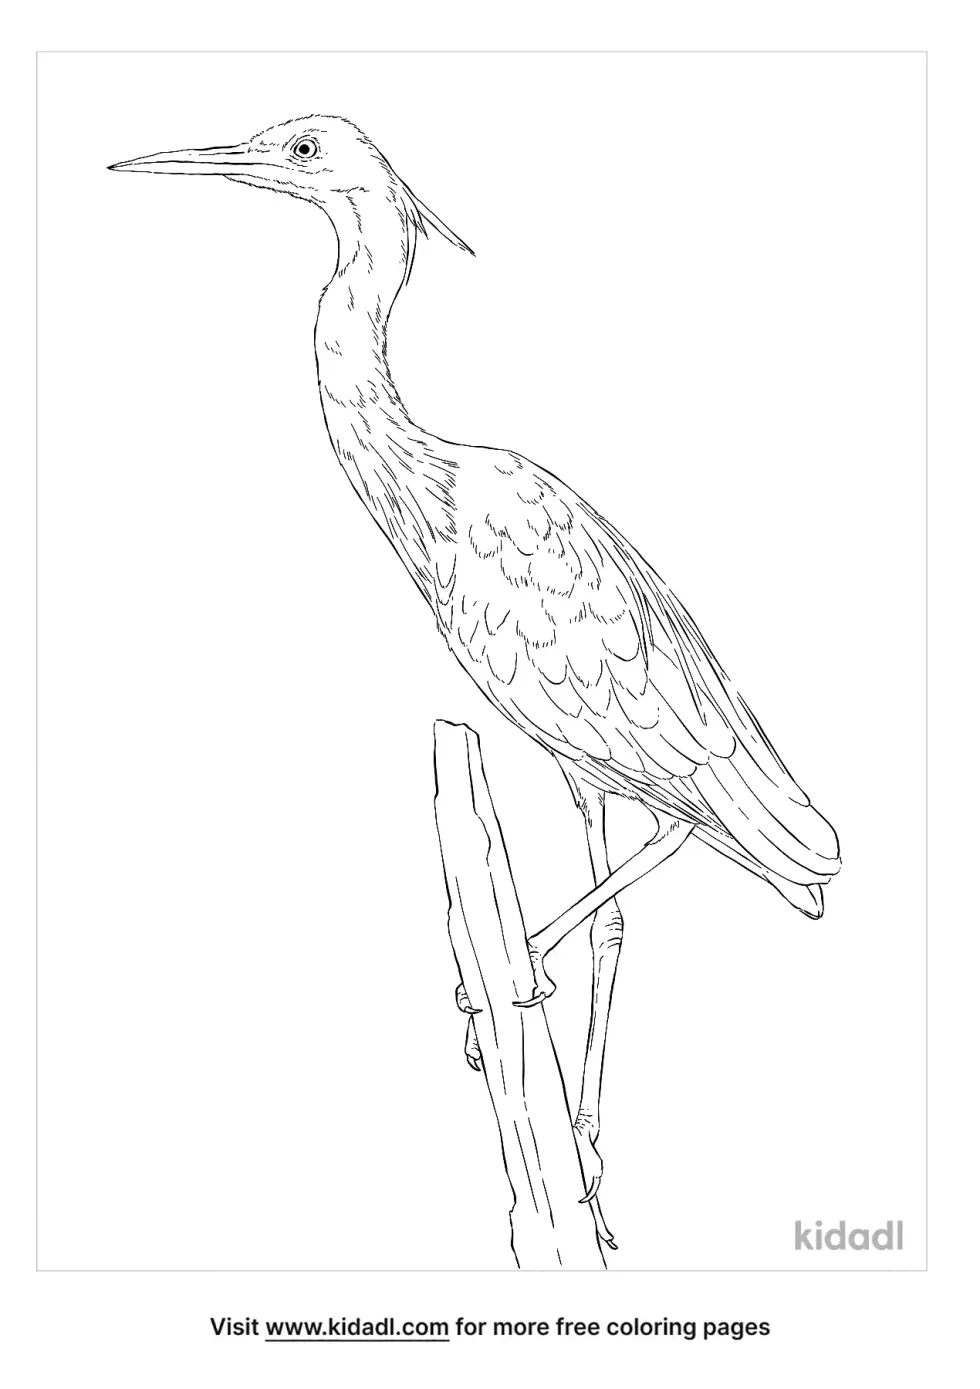 Slaty Egret